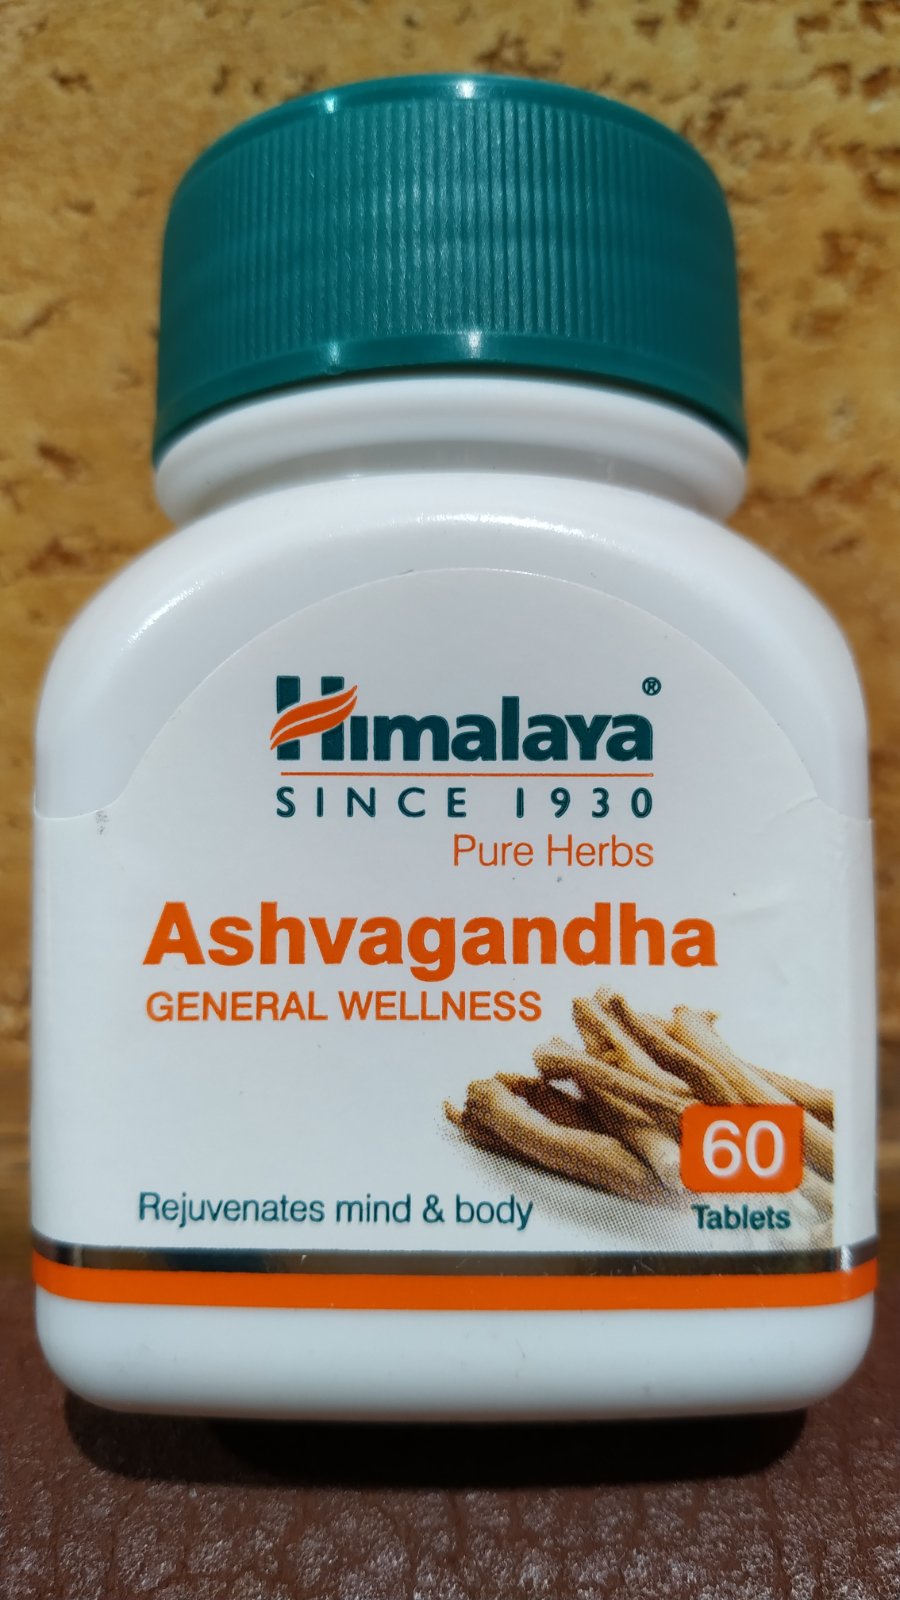 Ashvagandha Himalaya Ашваганда 60 таб Хималая истощение, переутомление, слабость, бессонница, возраст, склероз